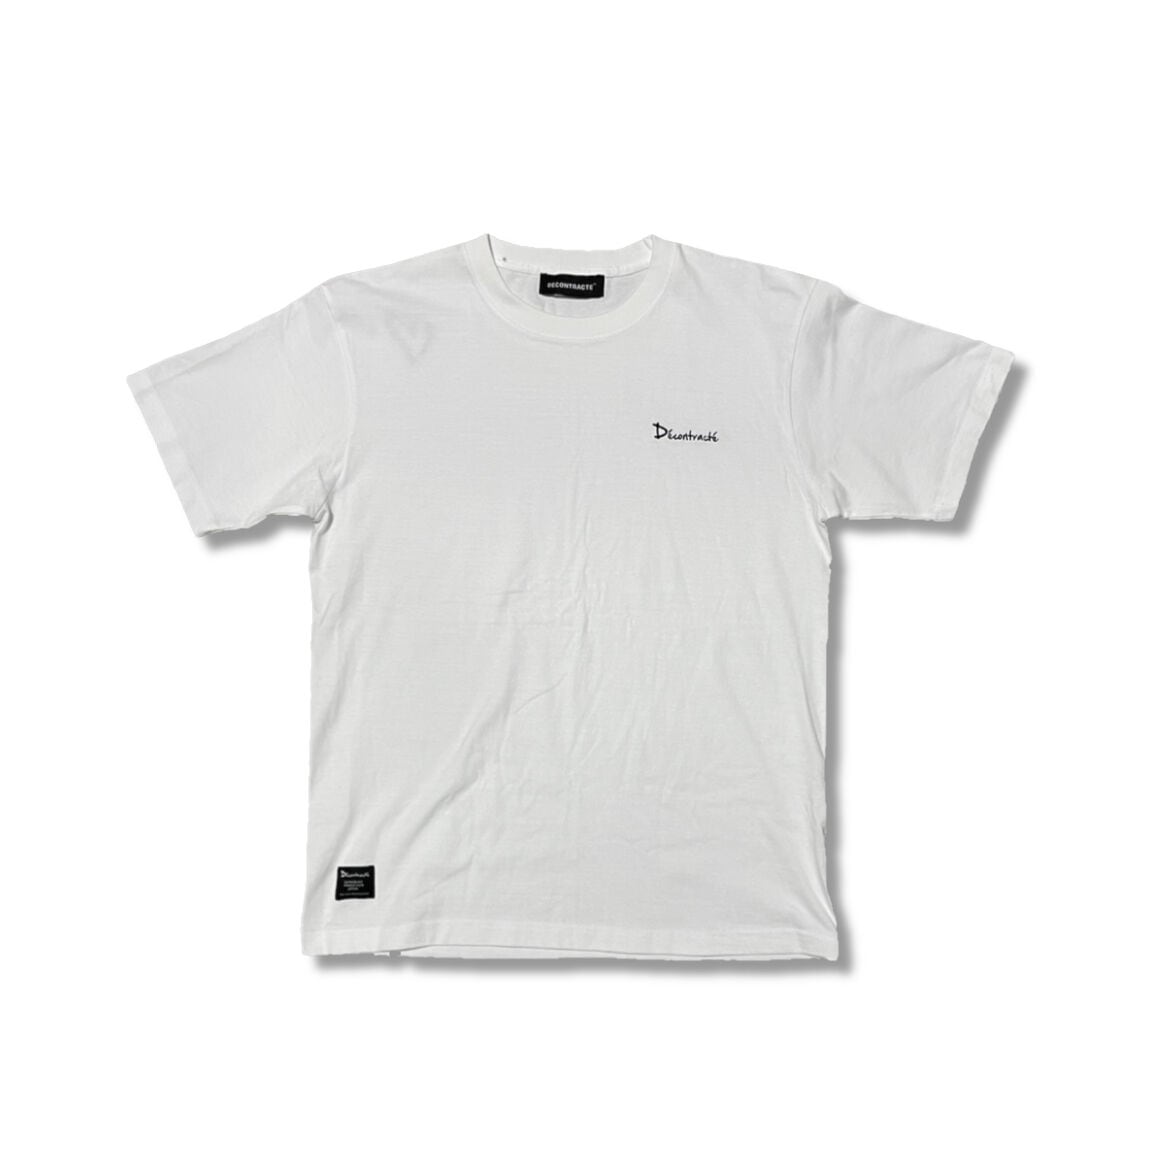 6.2oz Embroidery Tshirts C/# WHITE